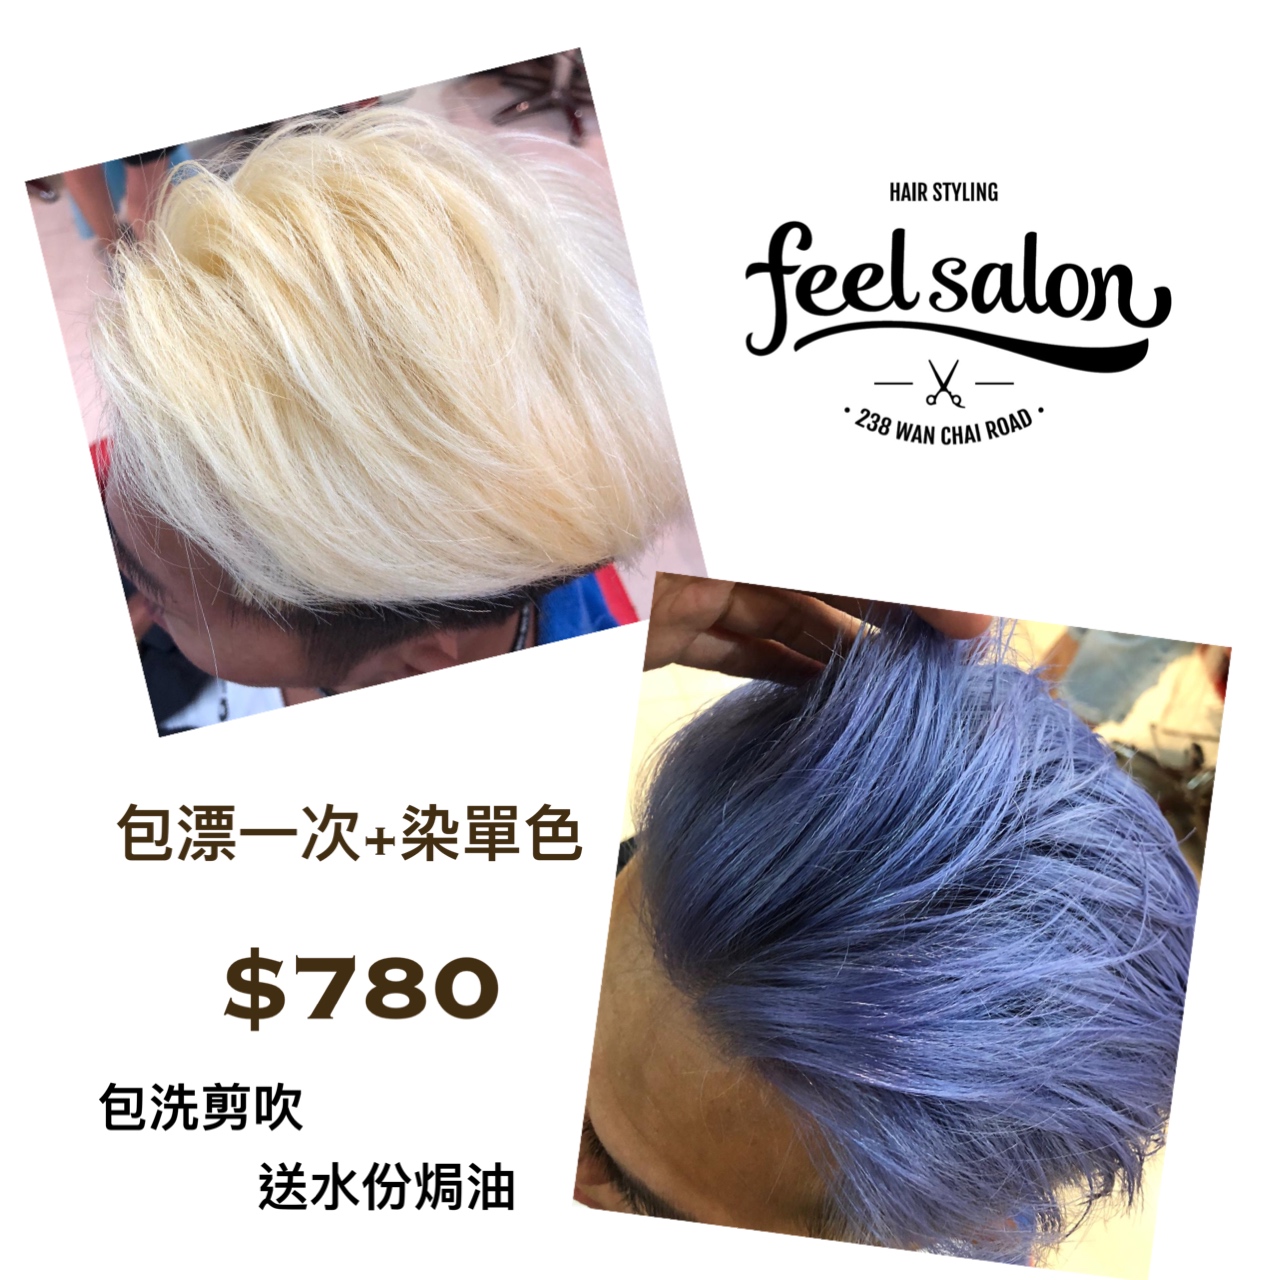 Feel Salon之髮型作品: 銀紫色